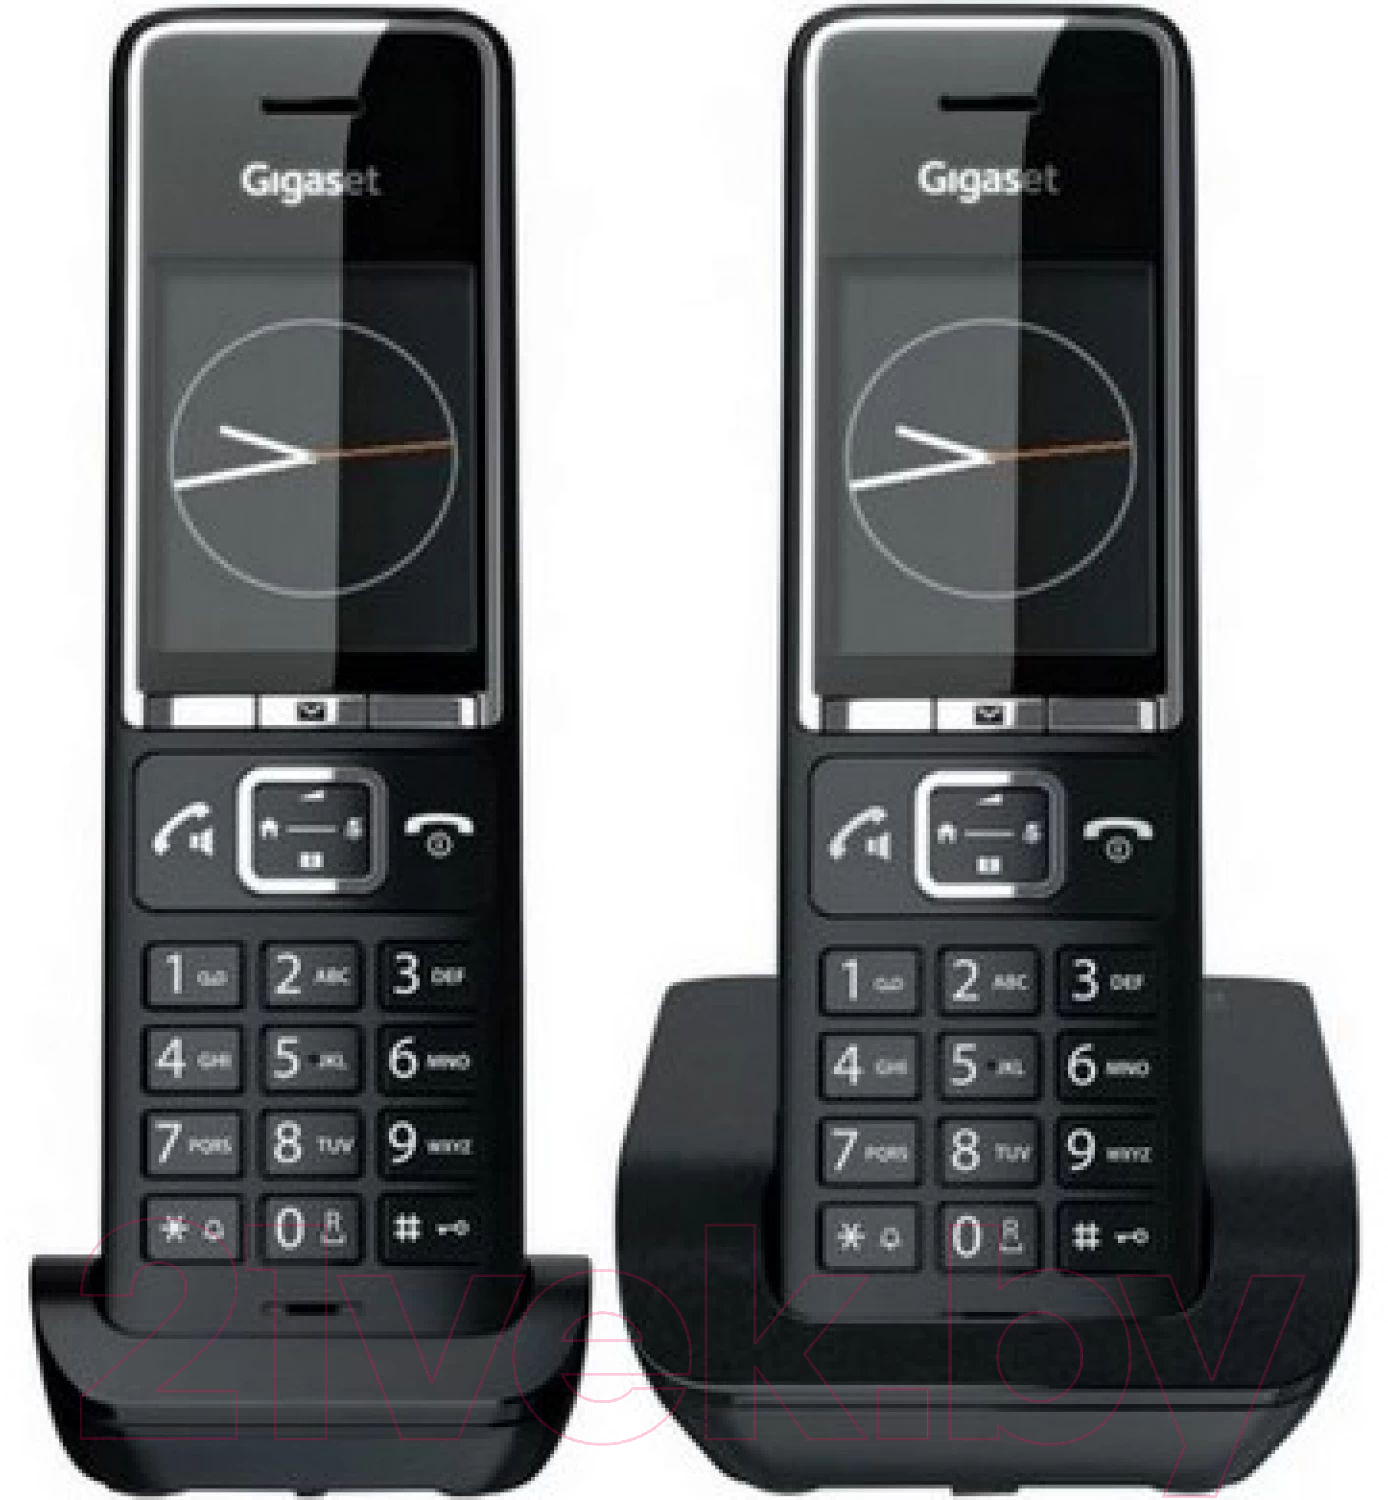 Беспроводной телефон Gigaset 550 Duo Rus / L36852-H3001-S304